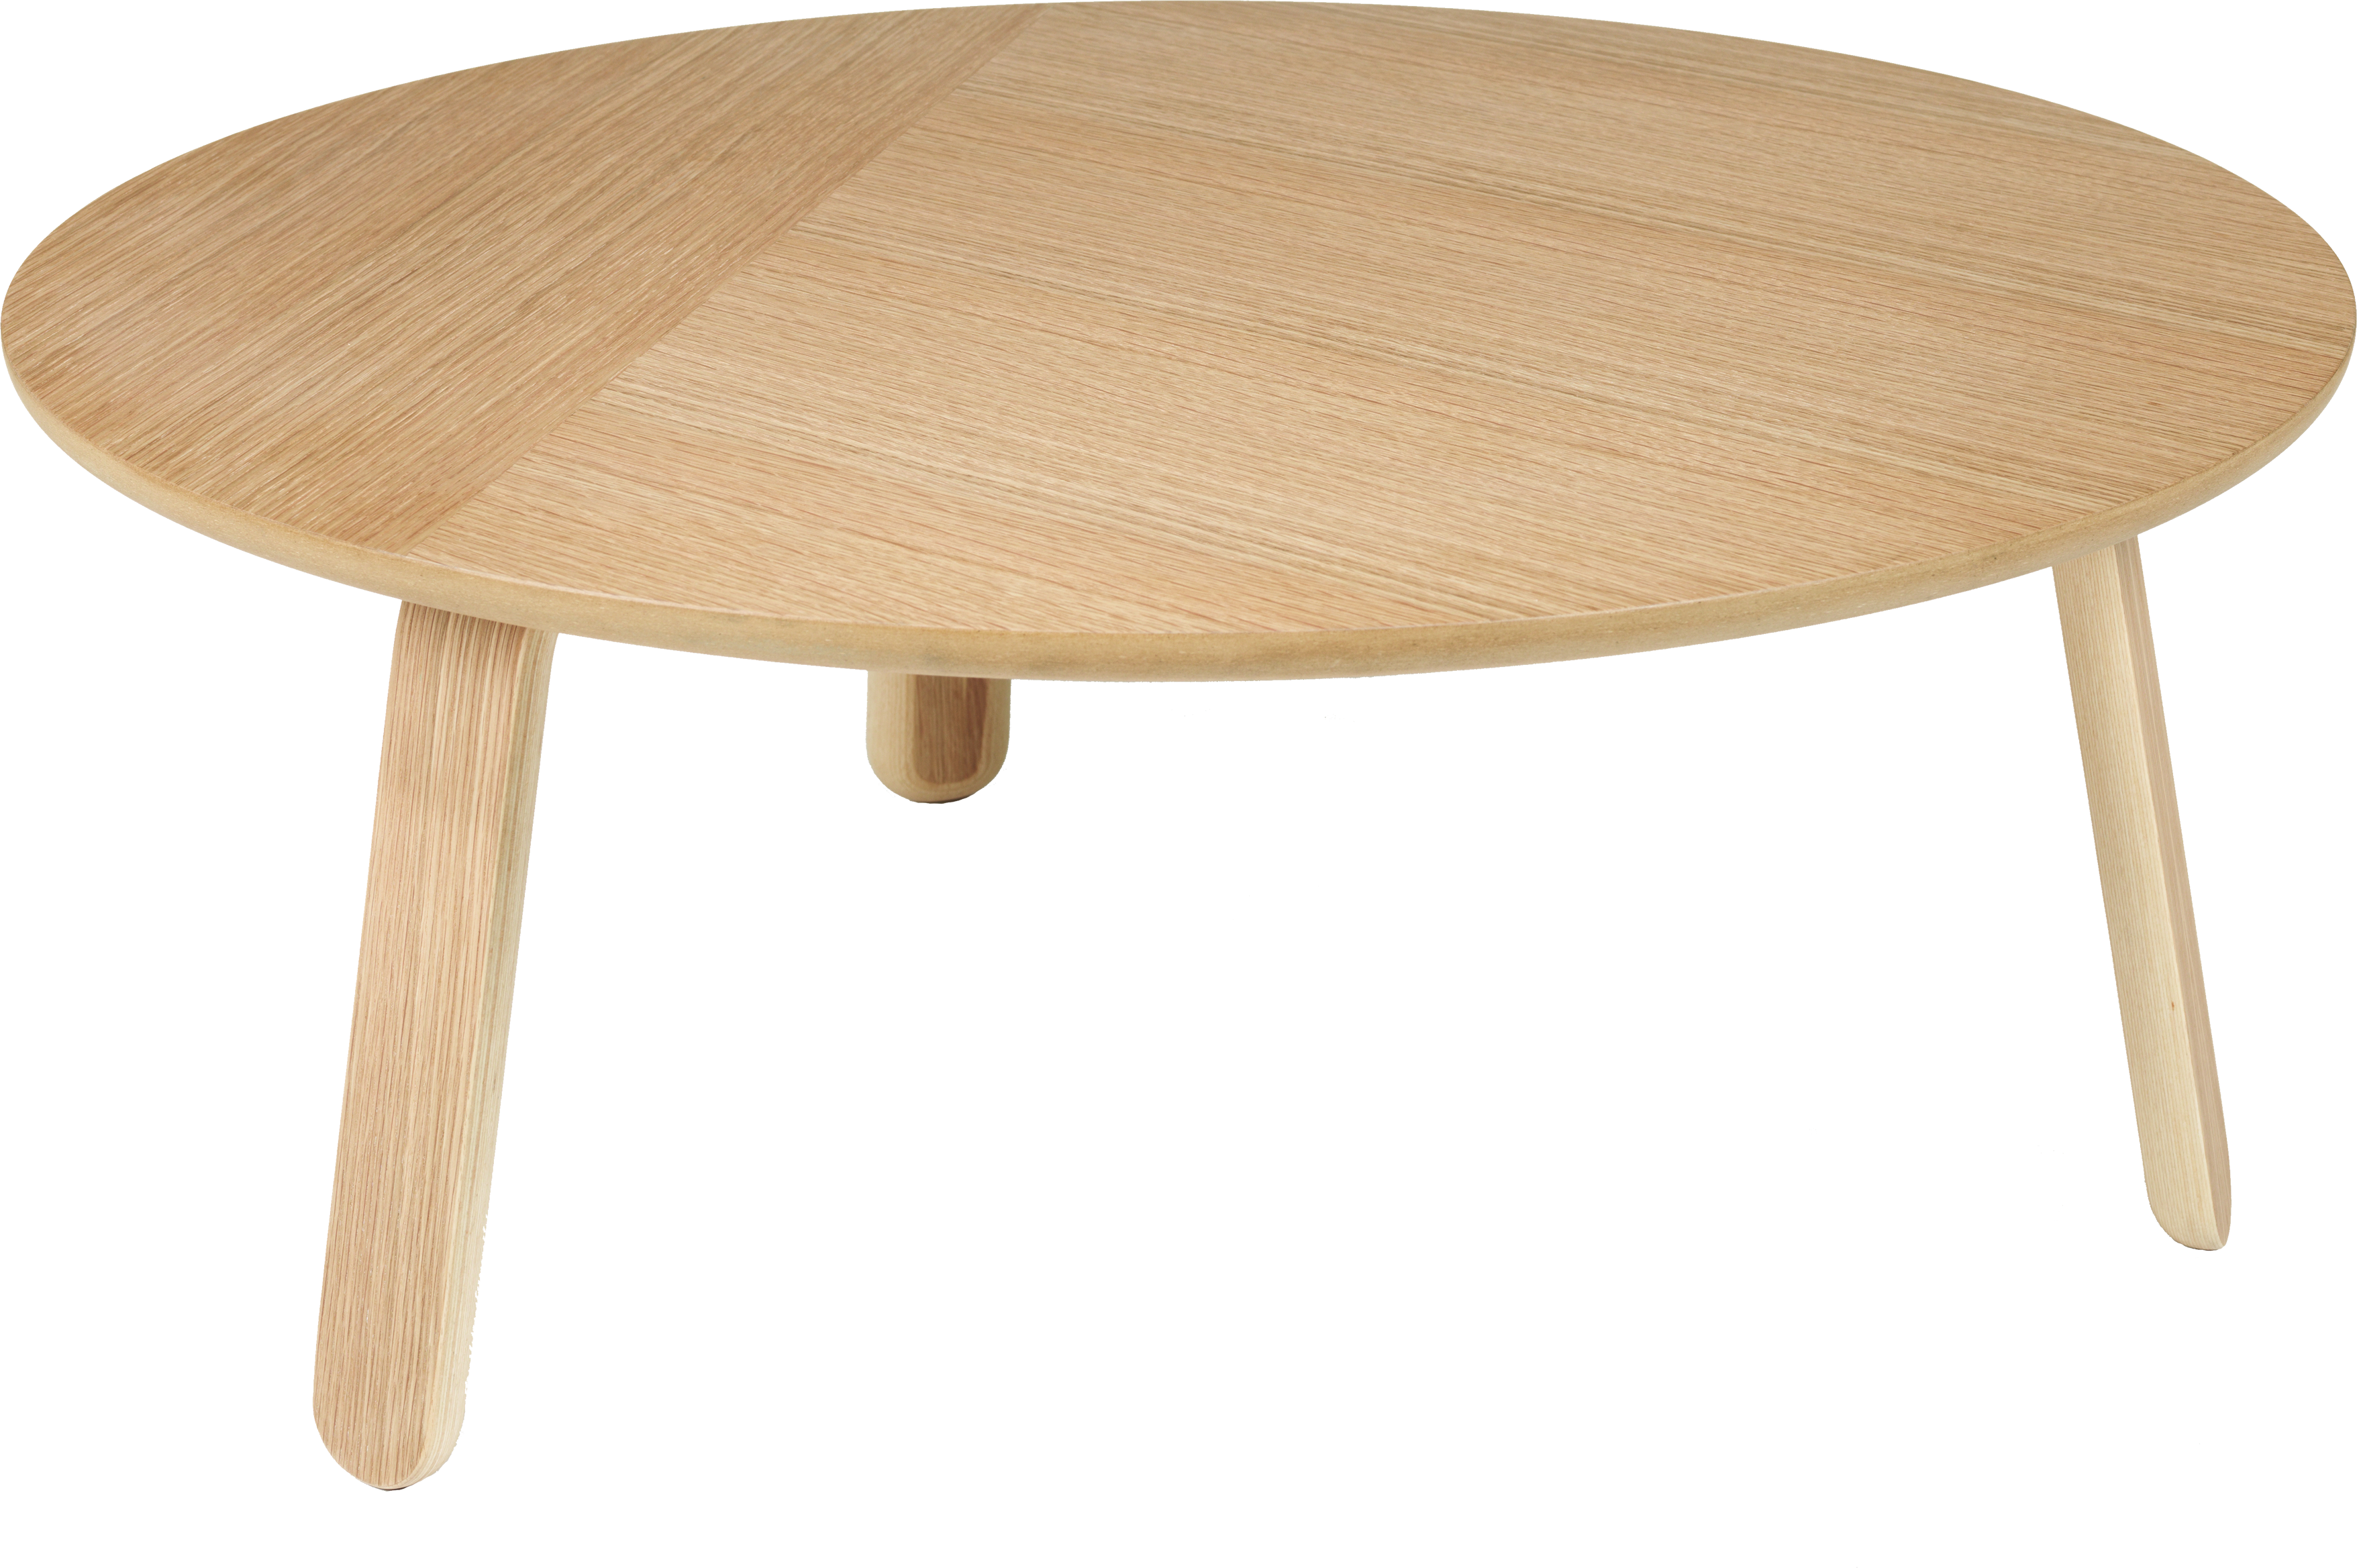 木桌